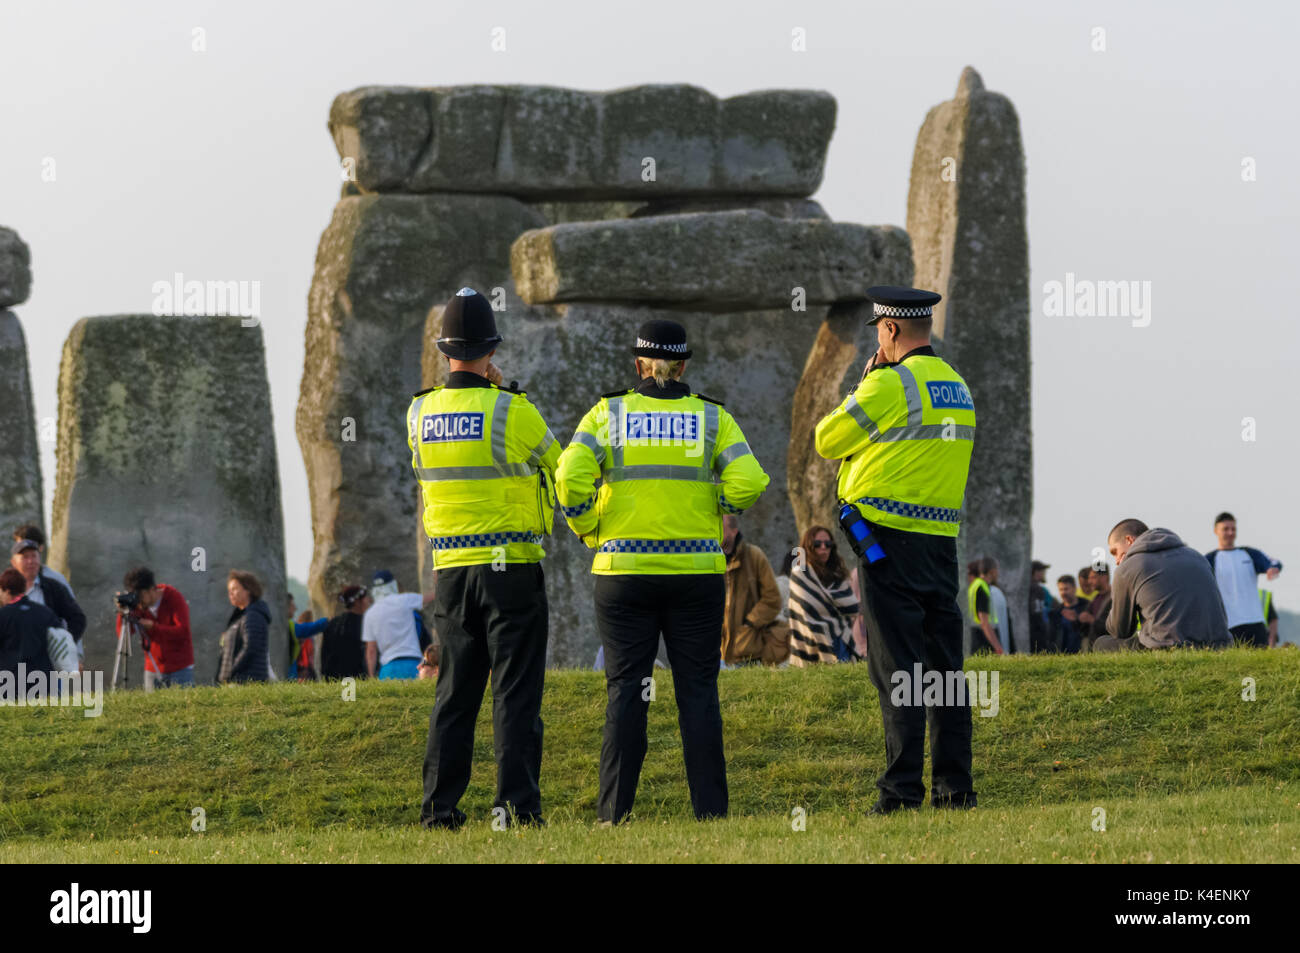 Patrouille de police à Stonehenge monument préhistorique dans le Wiltshire, Angleterre Royaume-Uni UK Banque D'Images